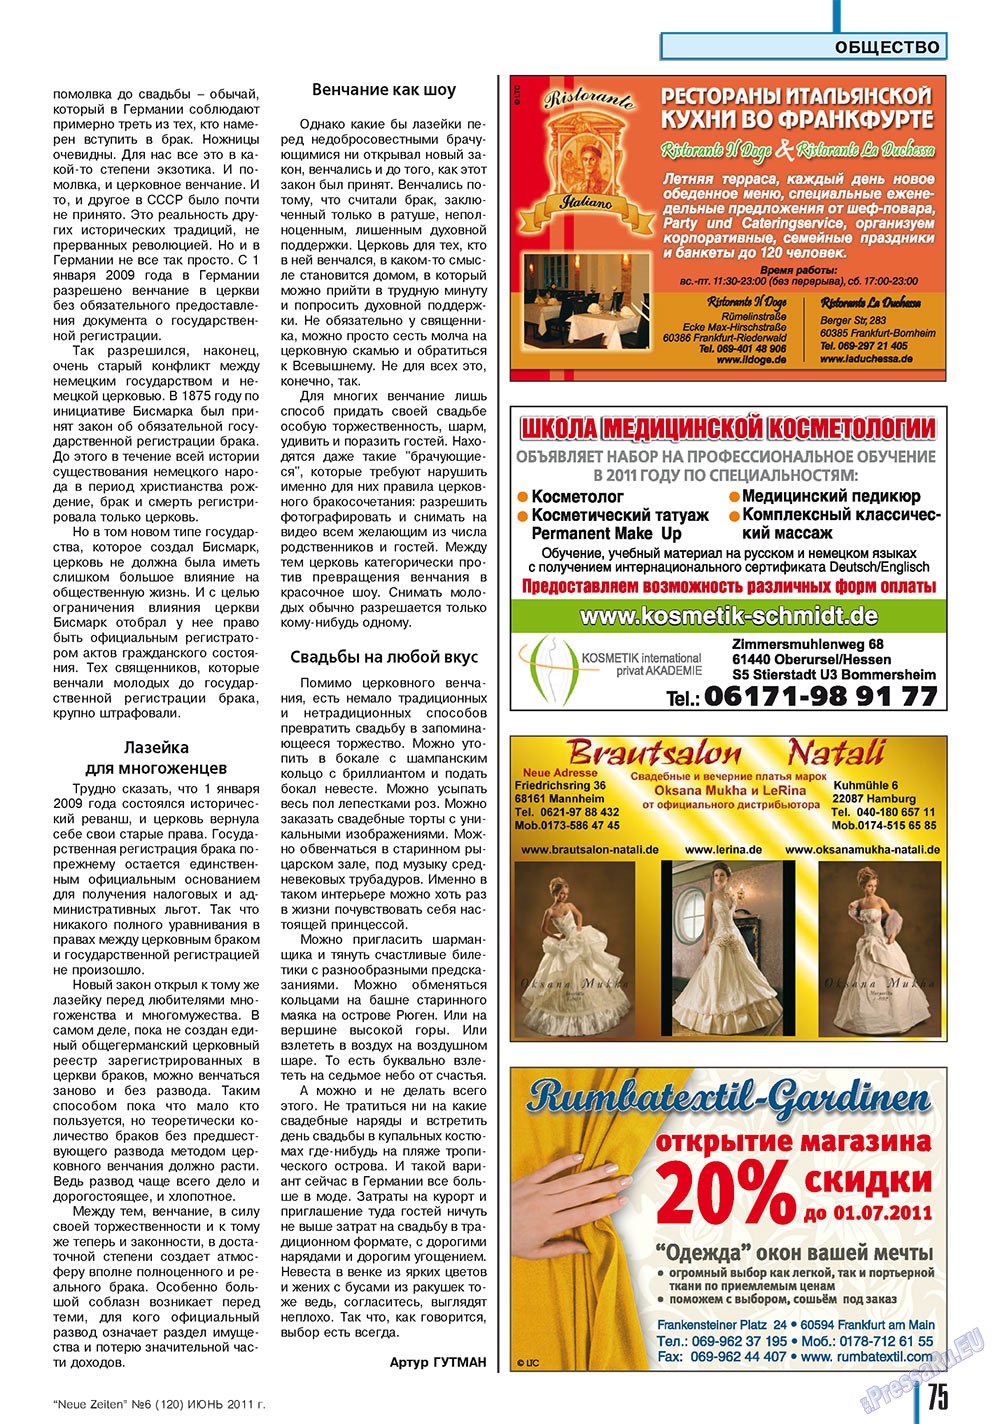 Neue Zeiten, журнал. 2011 №6 стр.75